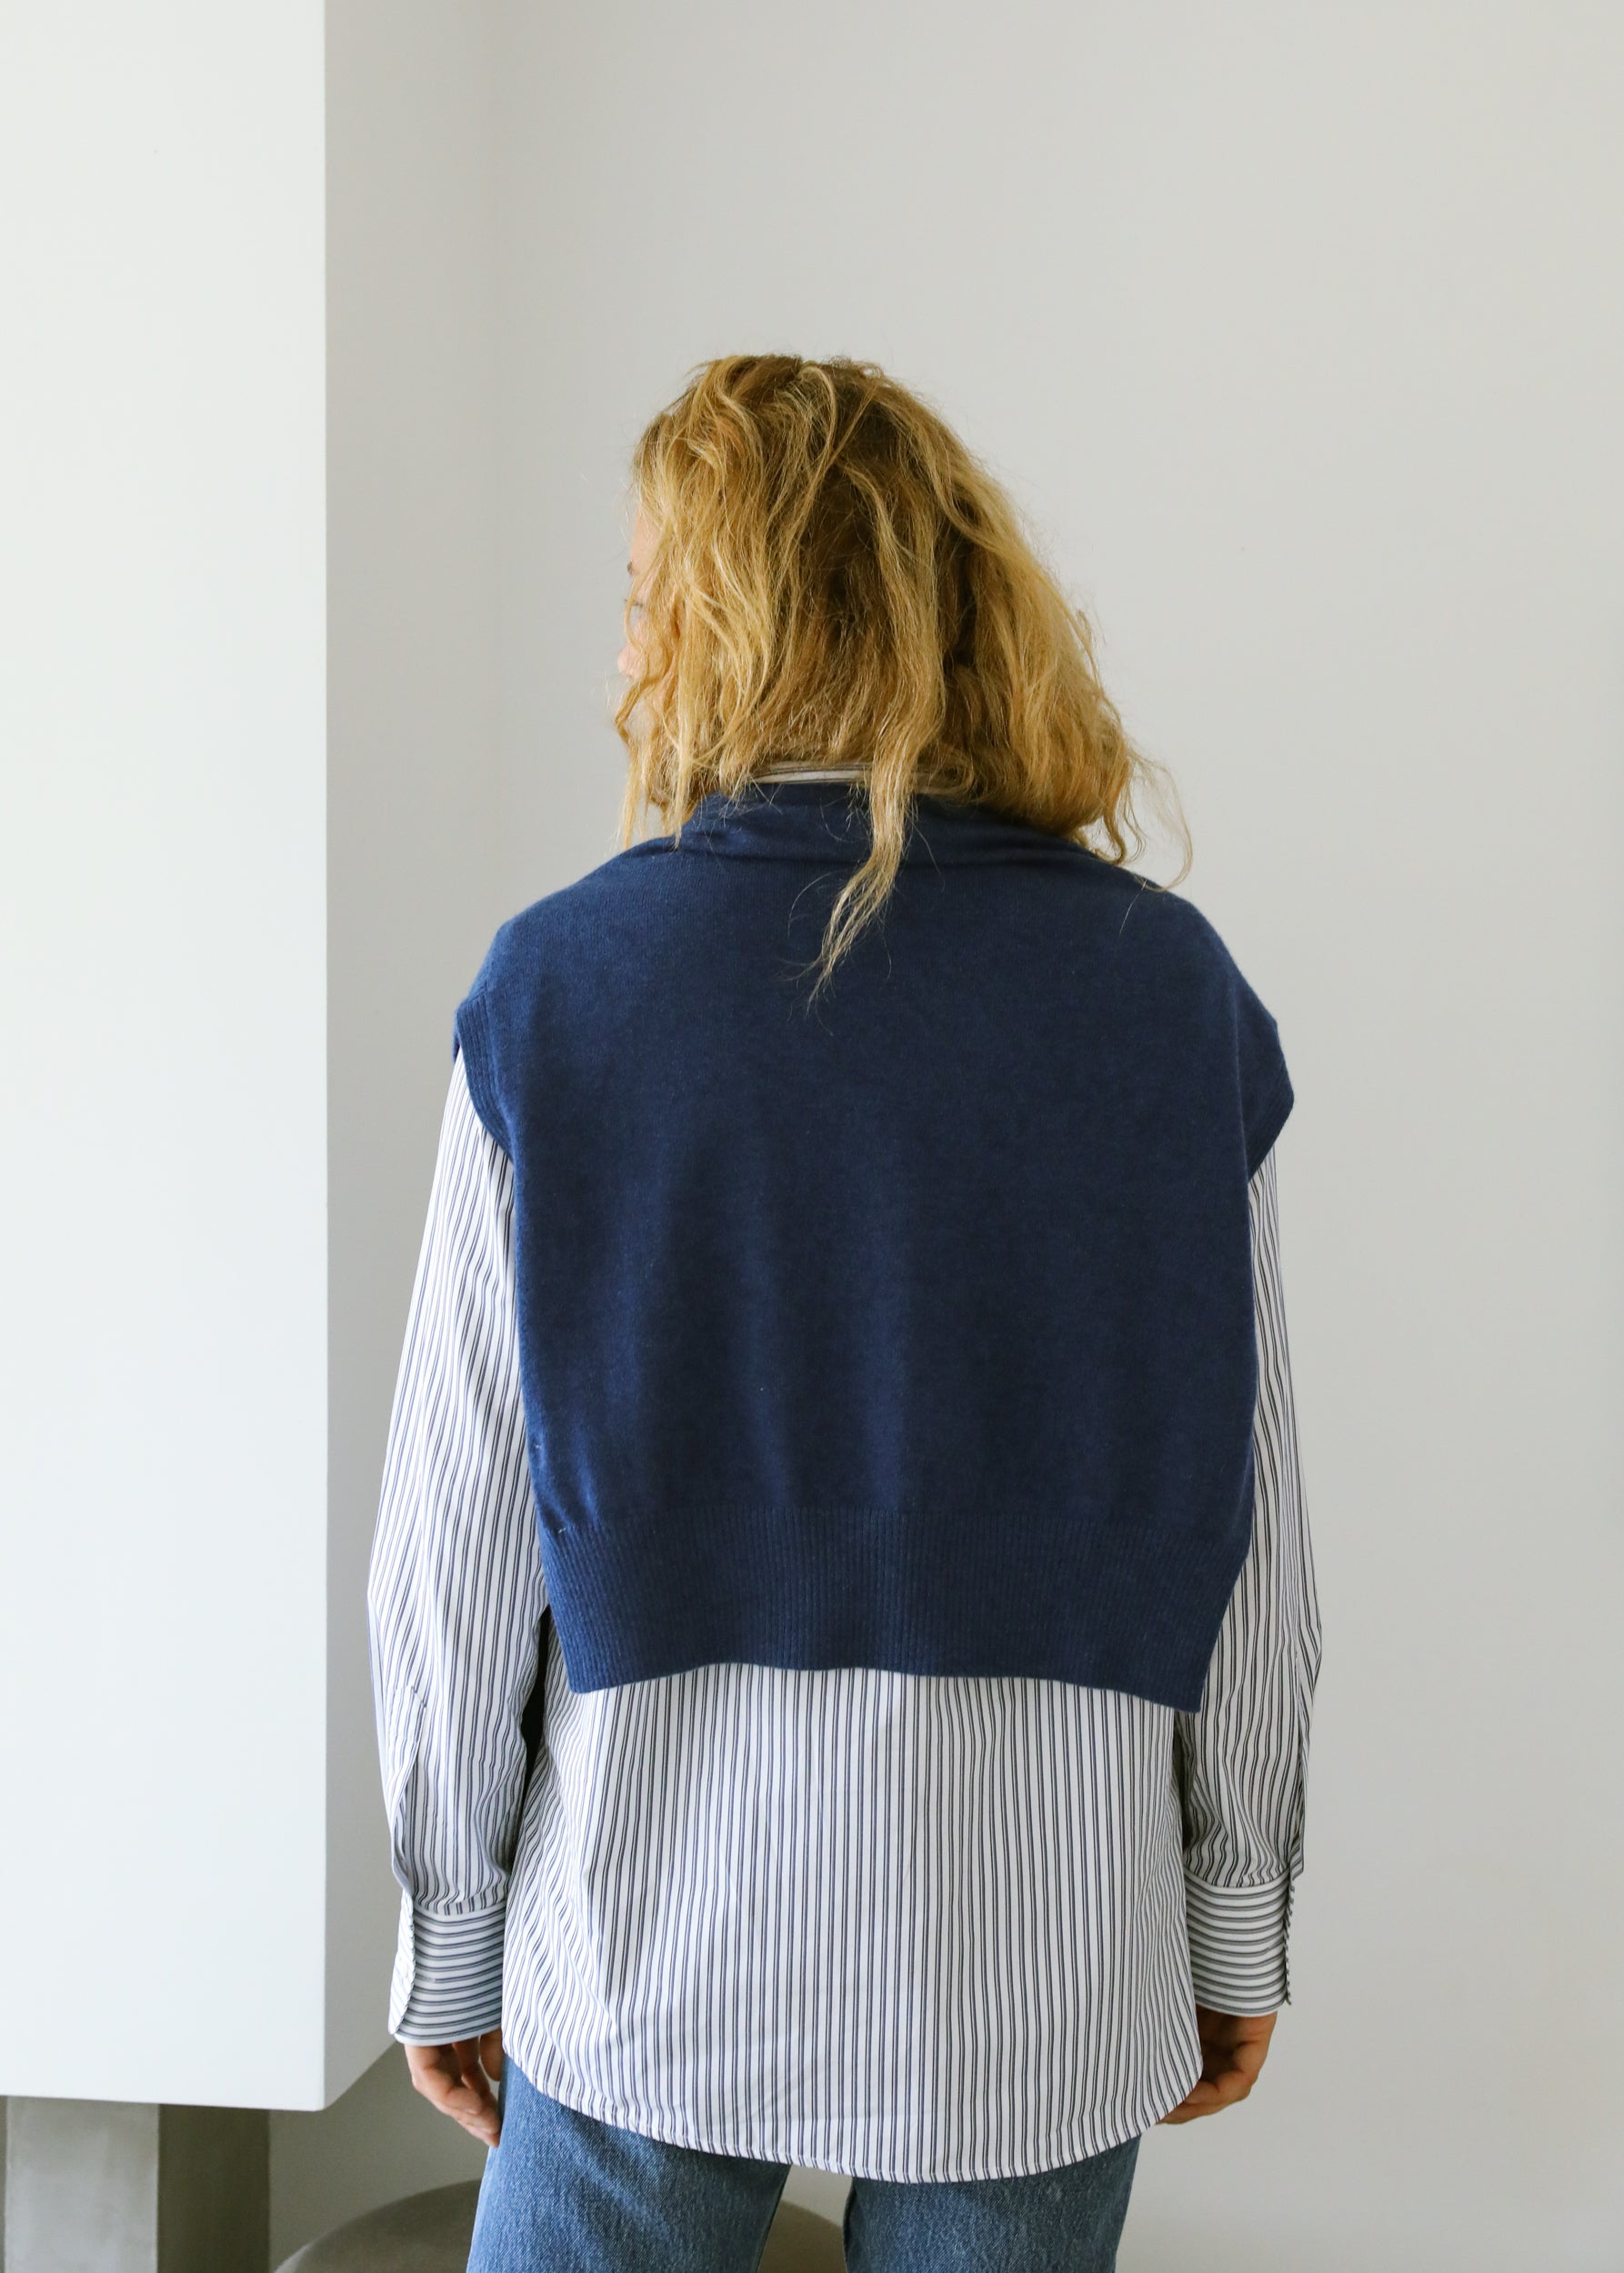 Estella NYC Valetta Sweater Scarf in Cobalt Blue Cashmere